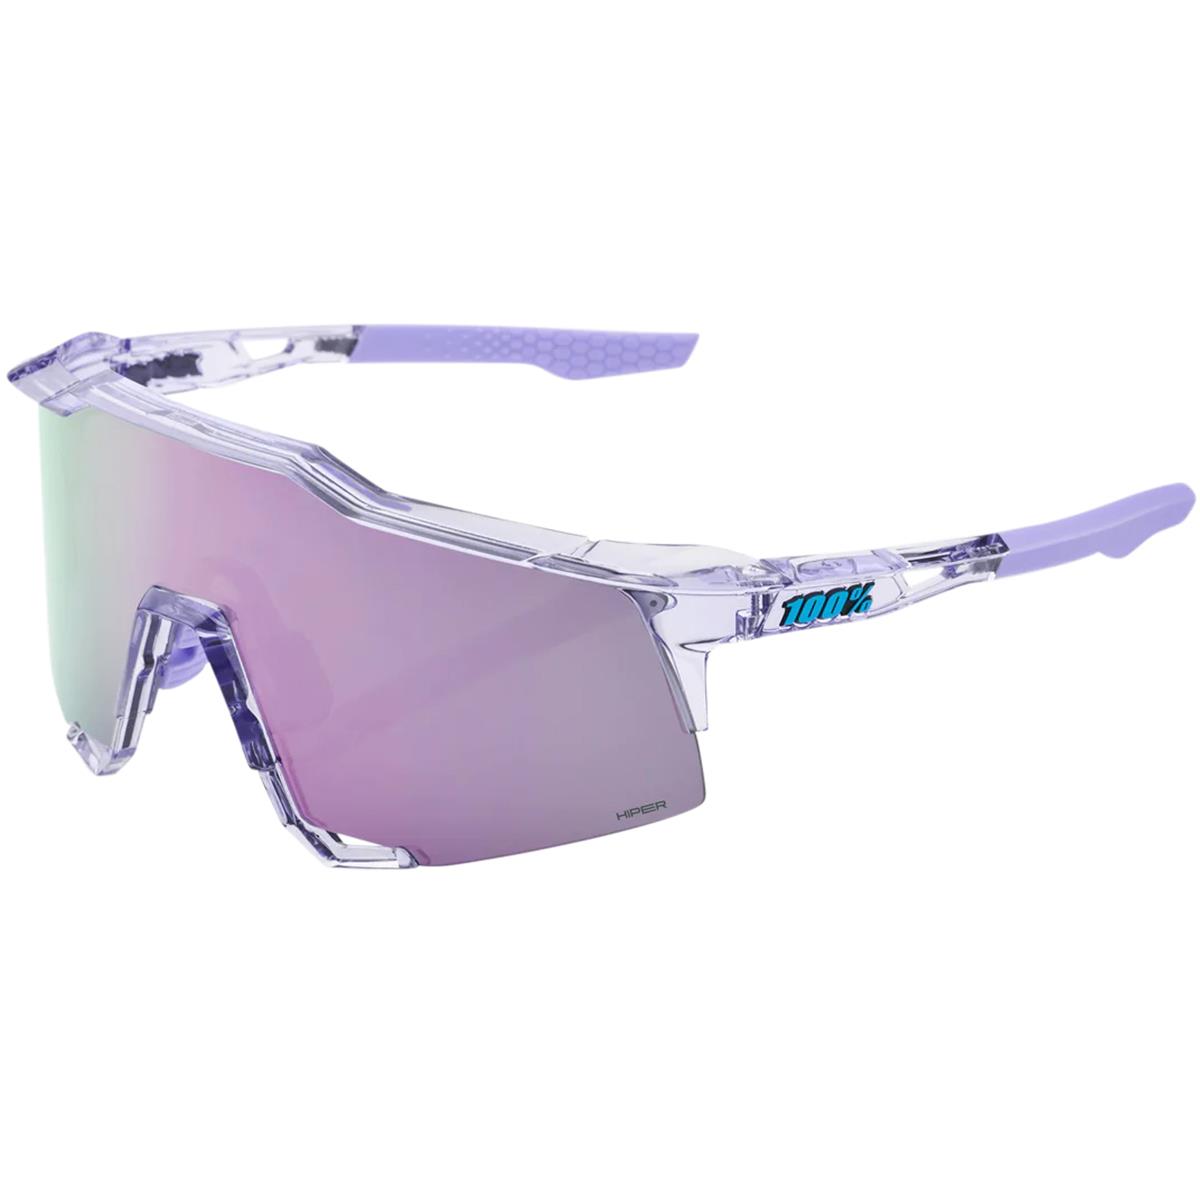 100% MTB Sport Glasses Speedcraft Polished Translucent Lavender - Hiper Lavender Mirror Lens